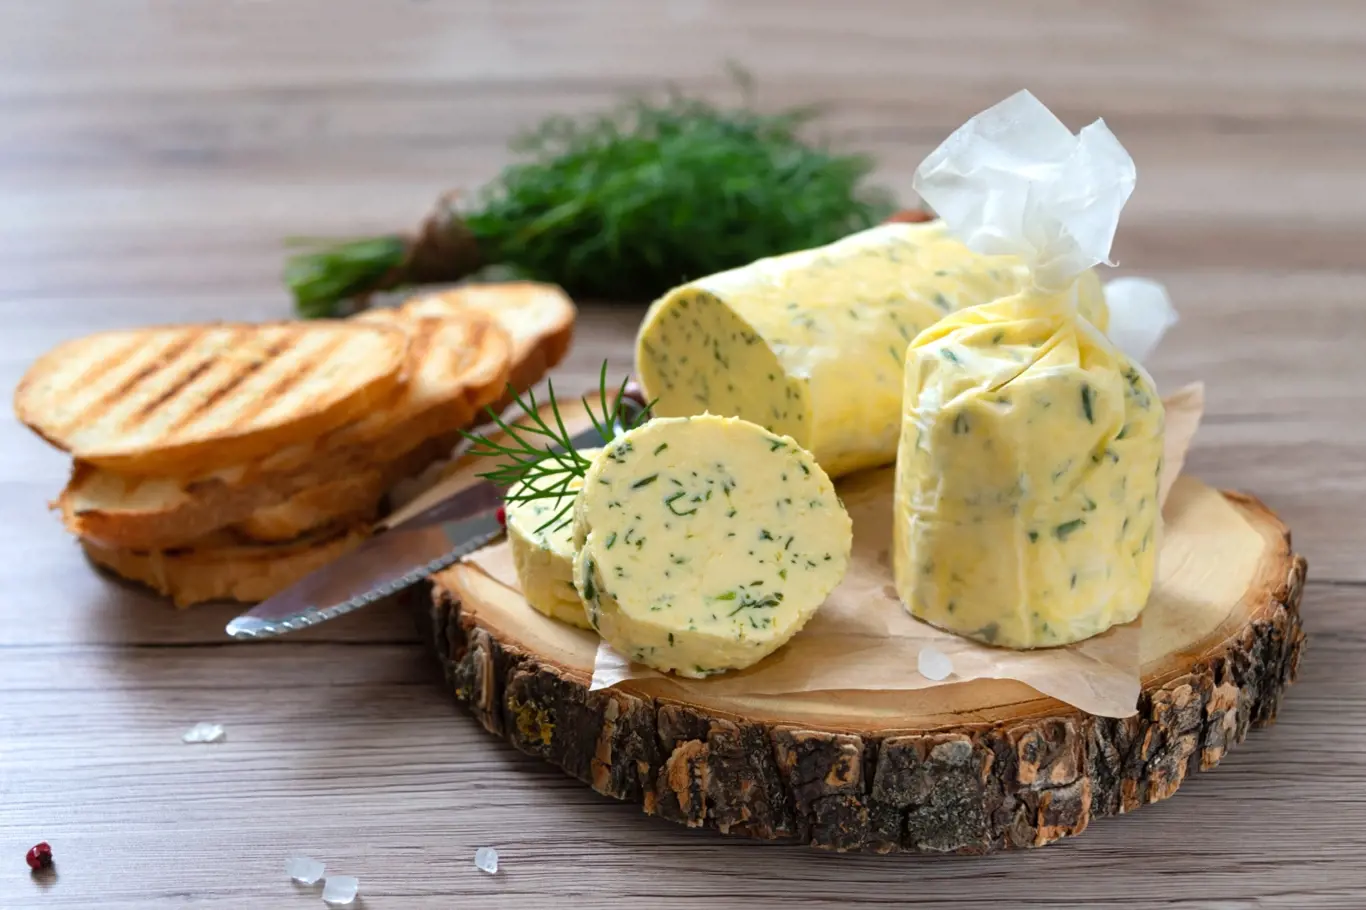 Bylinkové máslo je skvělá lahůdka, kterou připravíte rychle a jednoduše doma.